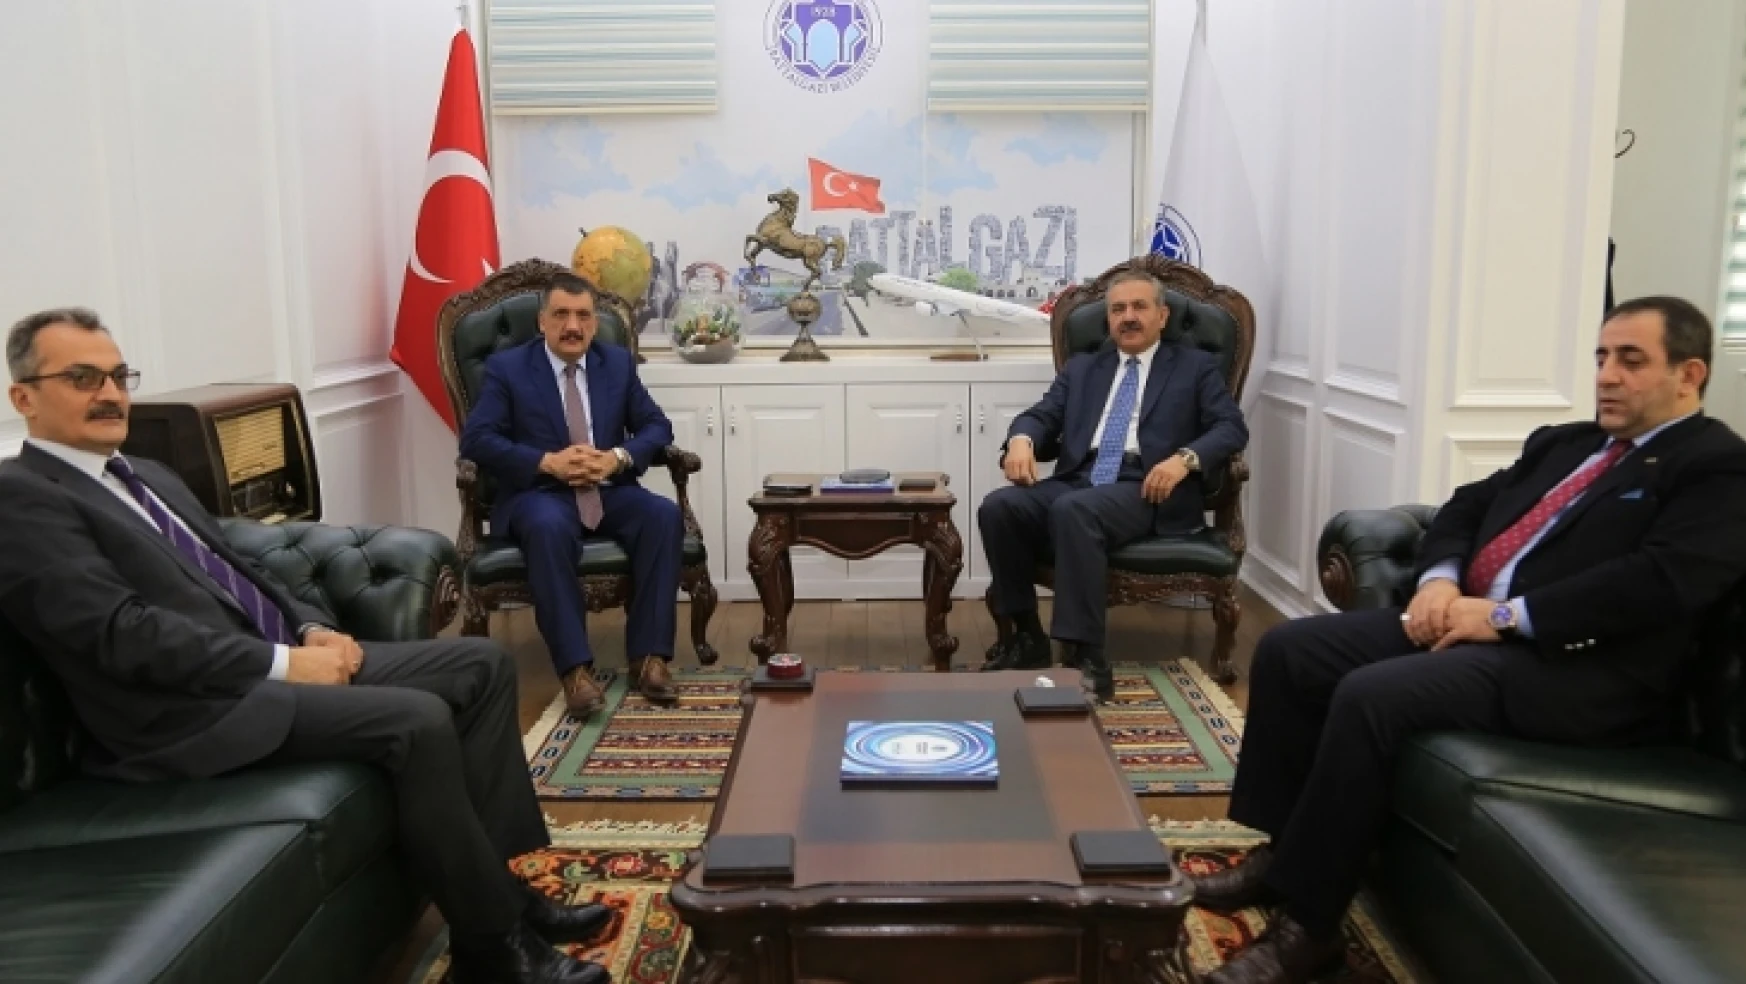 CHP 22. Dönem Malatya Milletvekili Kılıç, Başkan Gürkan'ı Ziyaret Etti